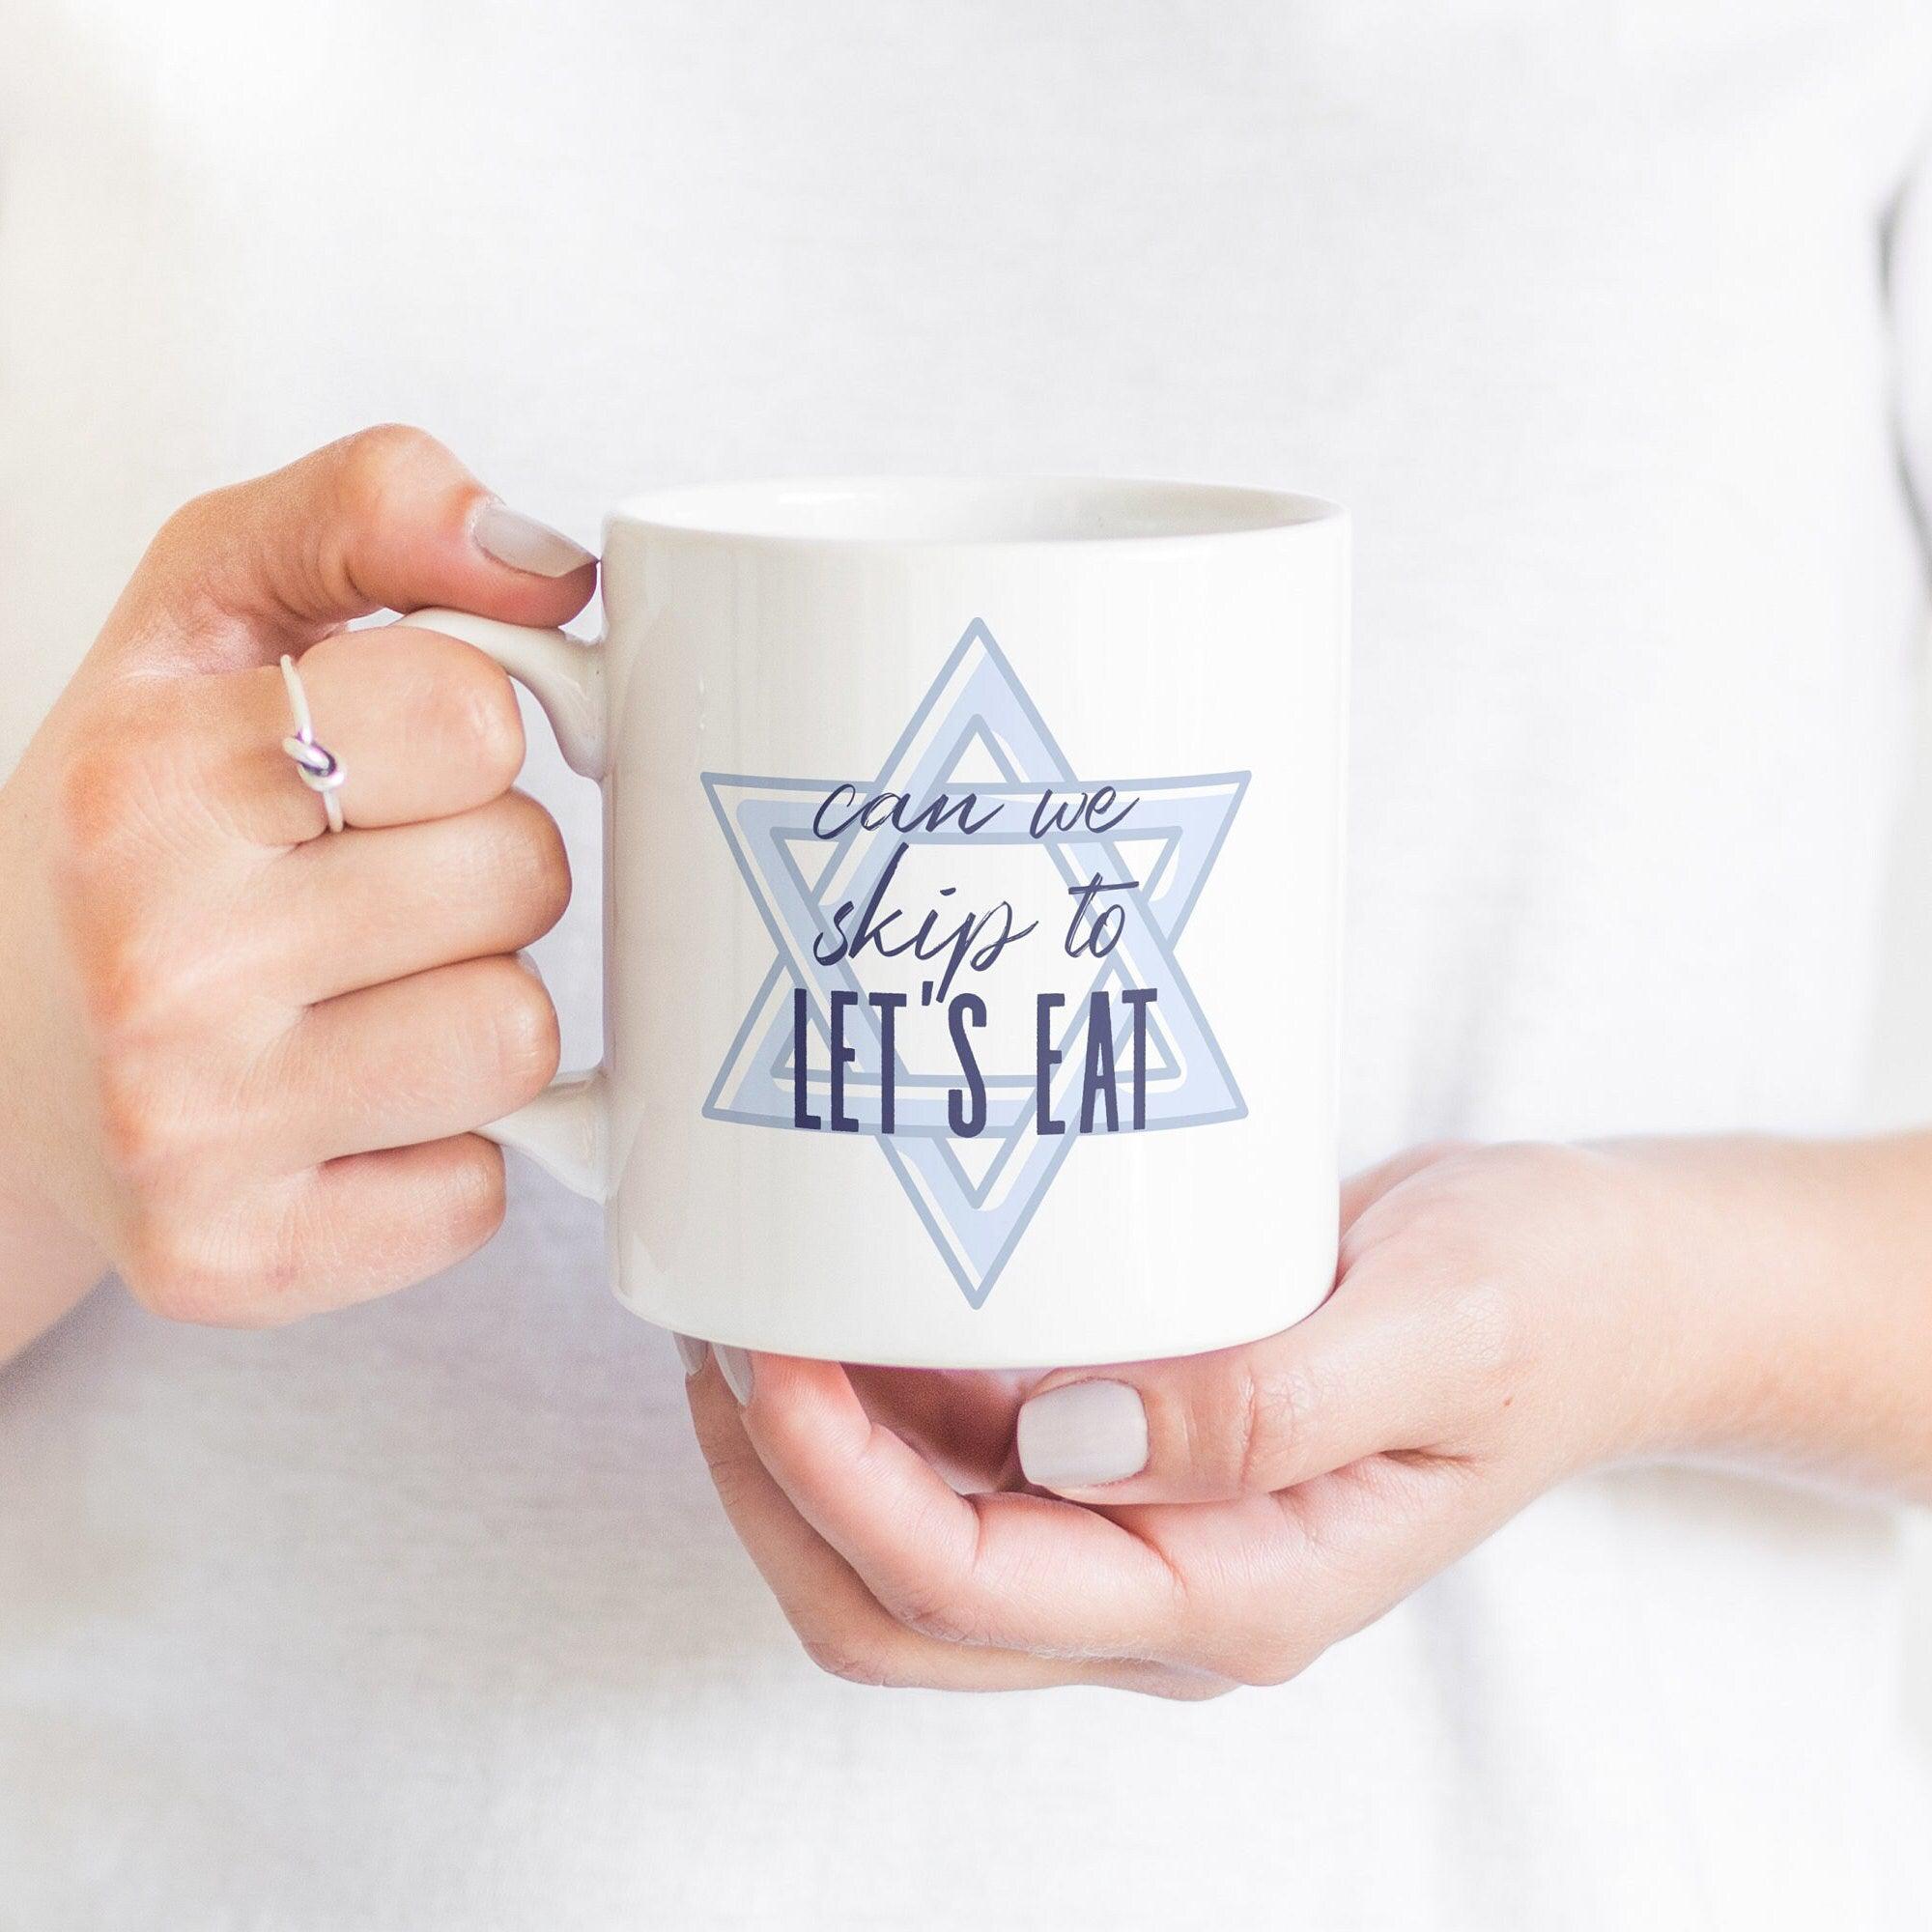 Let's Eat Jewish Coffee Mug Salt and Sparkle